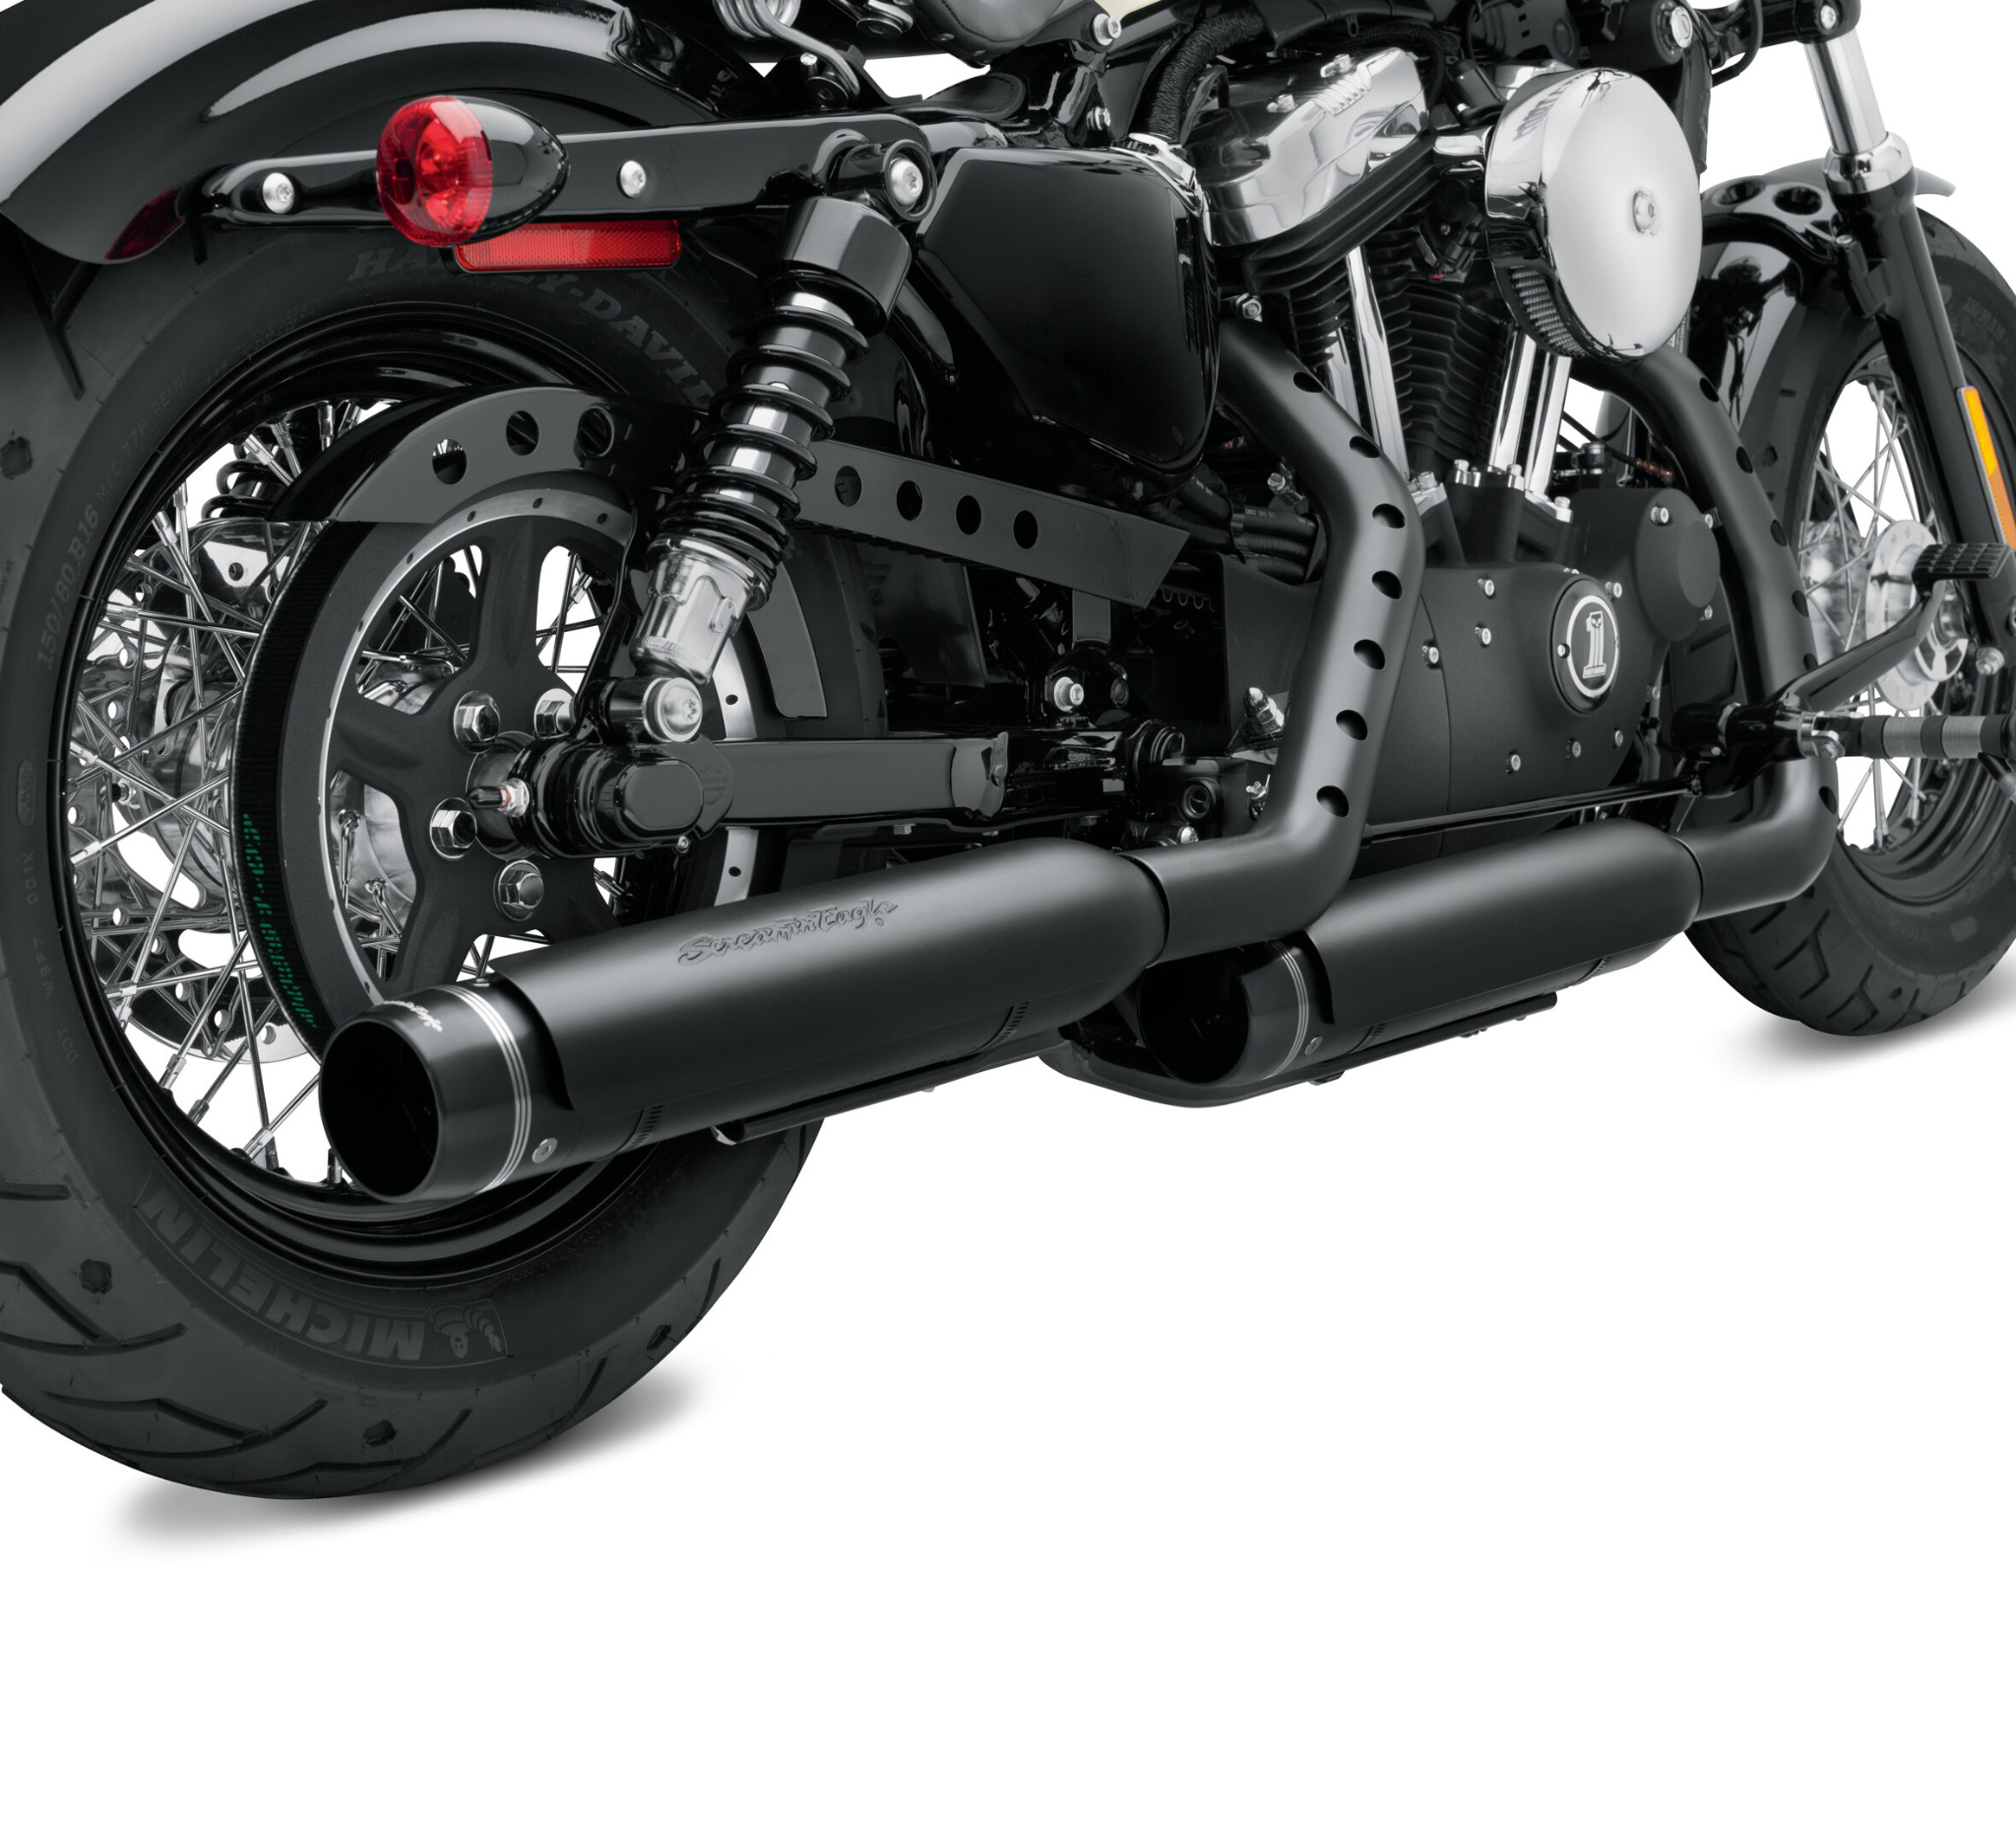 Chrome 3-1/4" Muffler Slip-on Exhaust Pipe For Harley Sportster 883 1200 Custom